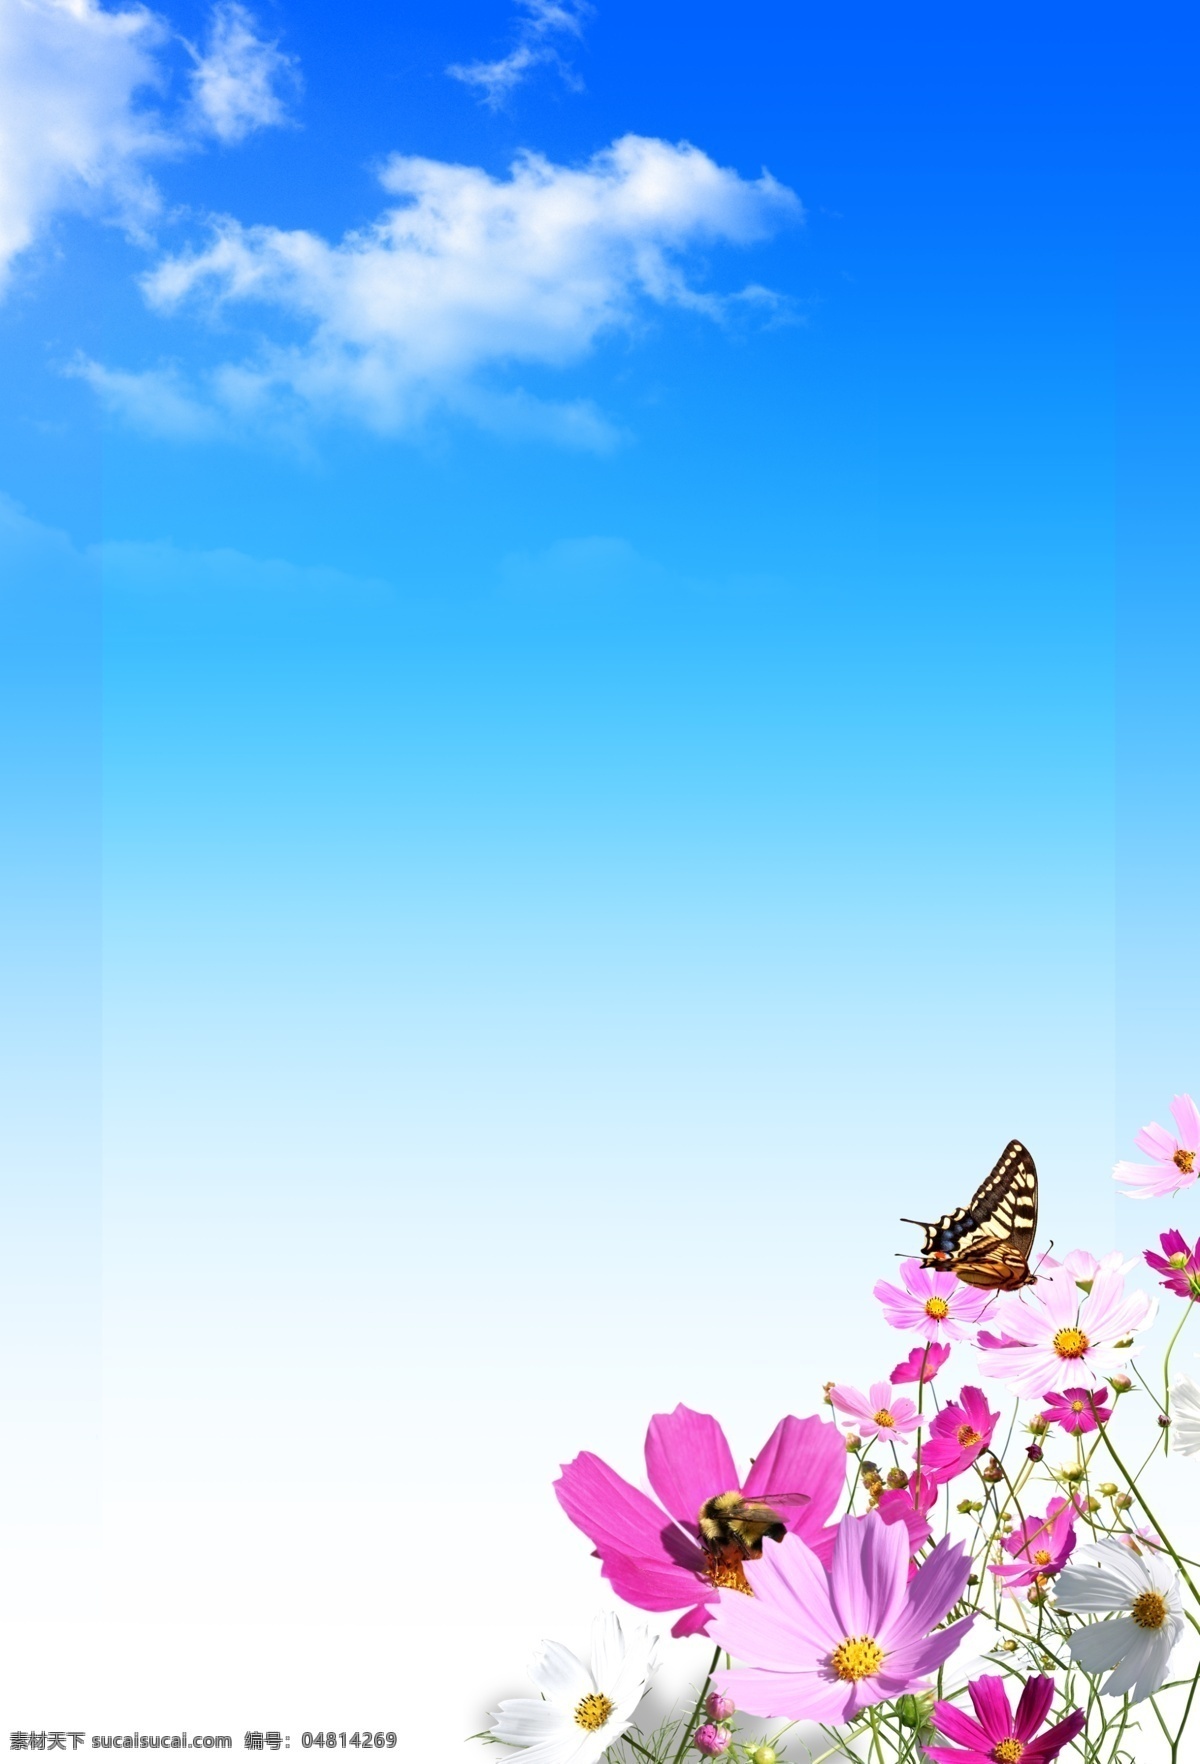 蓝天白云背景 蓝色背景 海报背景 蝴蝶 花丛 展板背景 背景模板 蓝天白云 鲜花 野花 背景